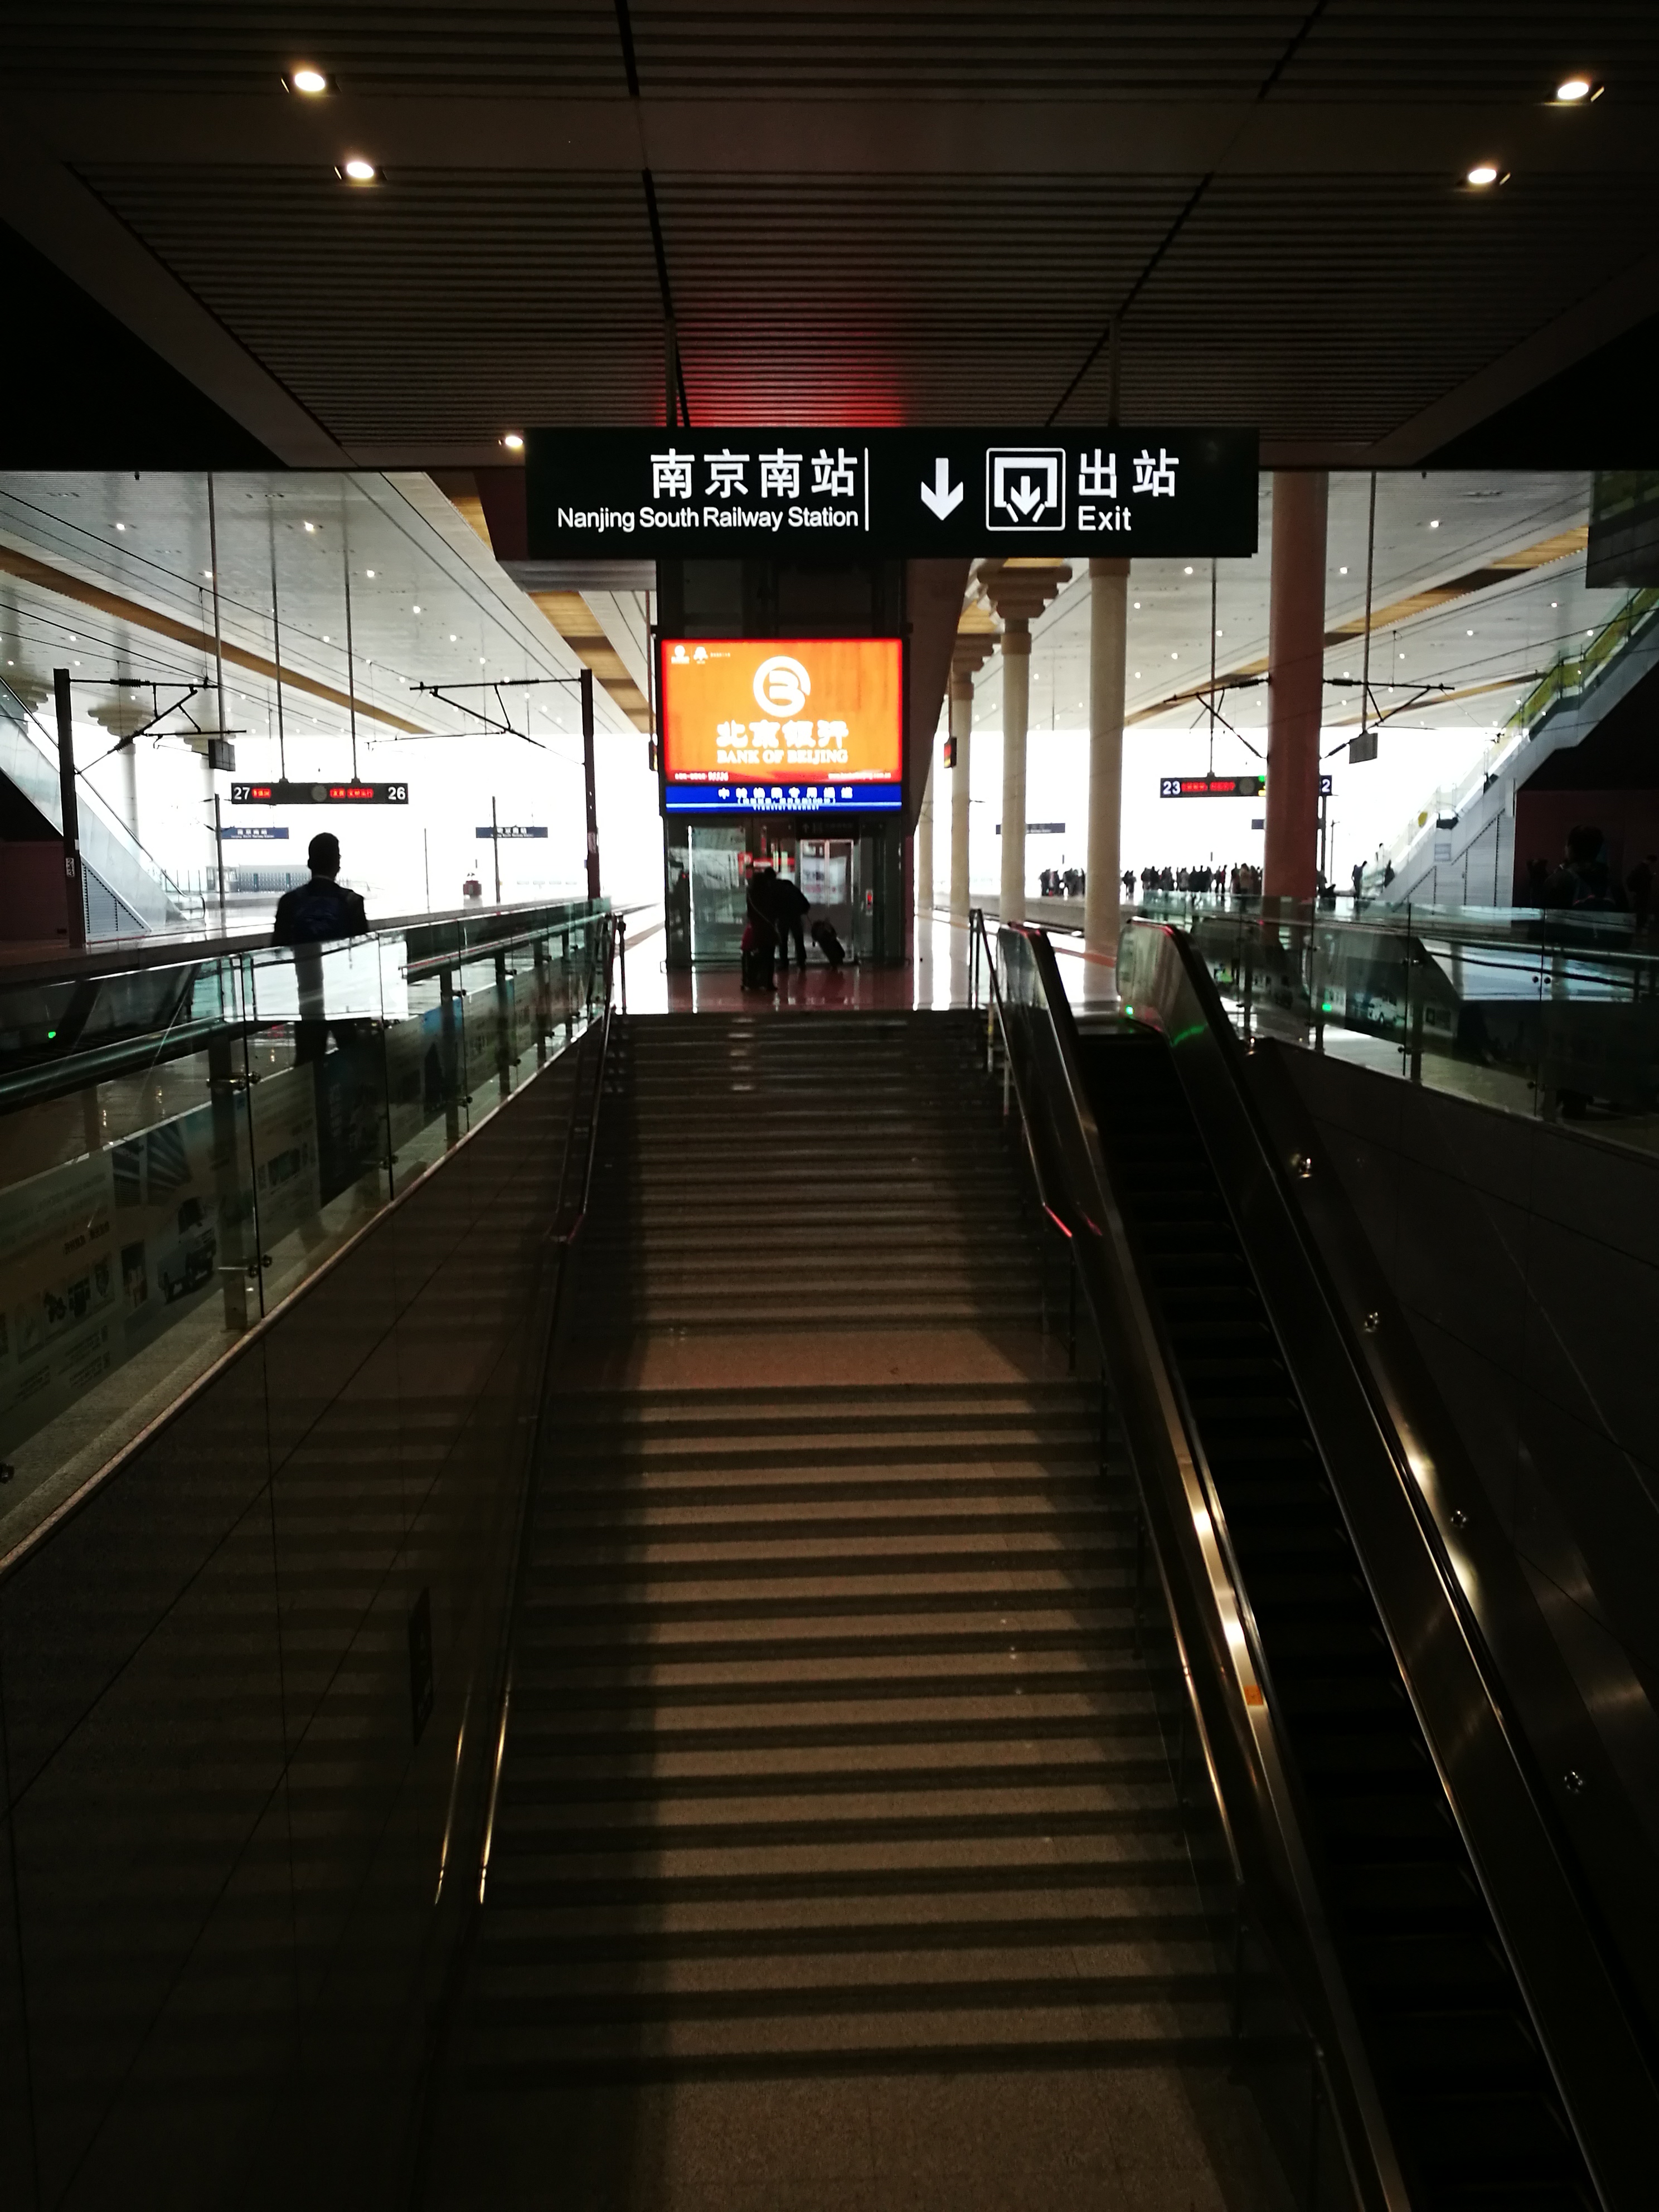 【携程攻略】景点,南京南站是一座现代化的高铁站，这儿应该是华东地区最大的高铁站之一…